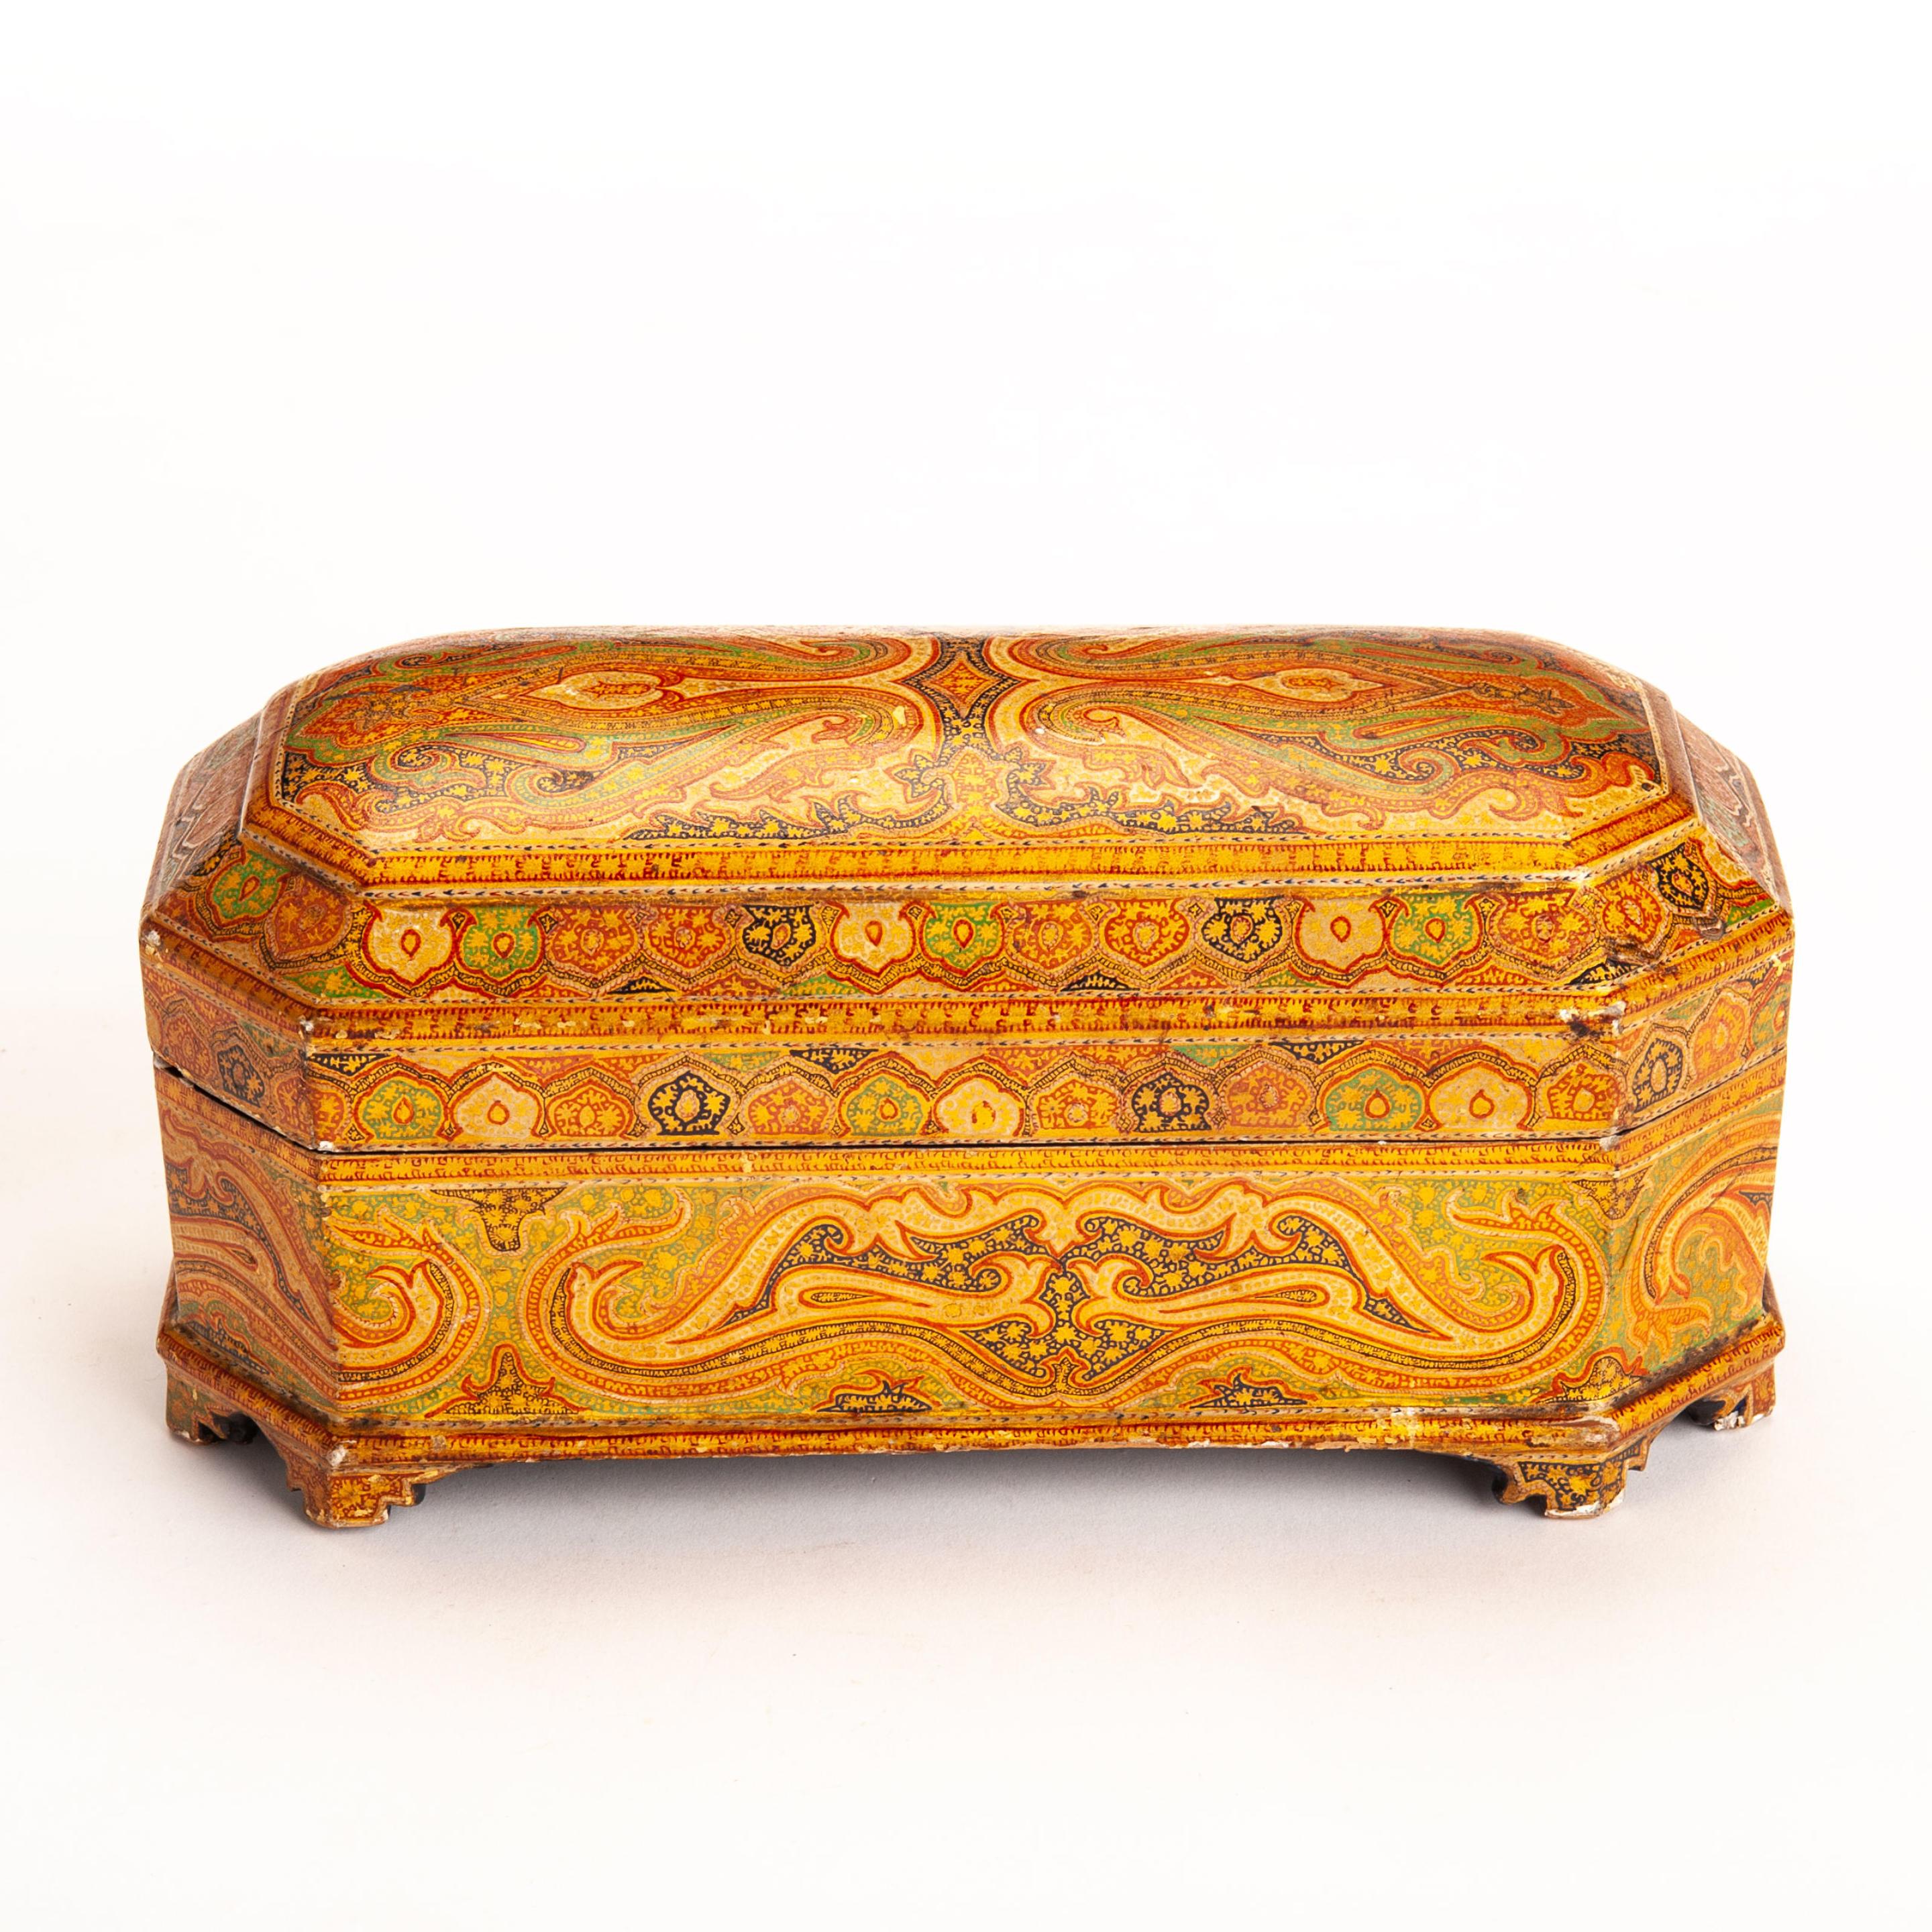 Réf : 125482
Boîte en laque du Cachemire.
Papier mâché avec peinture à la main et détails dorés.
Inde vers 1900

Dimensions : H : 10cm (3.9